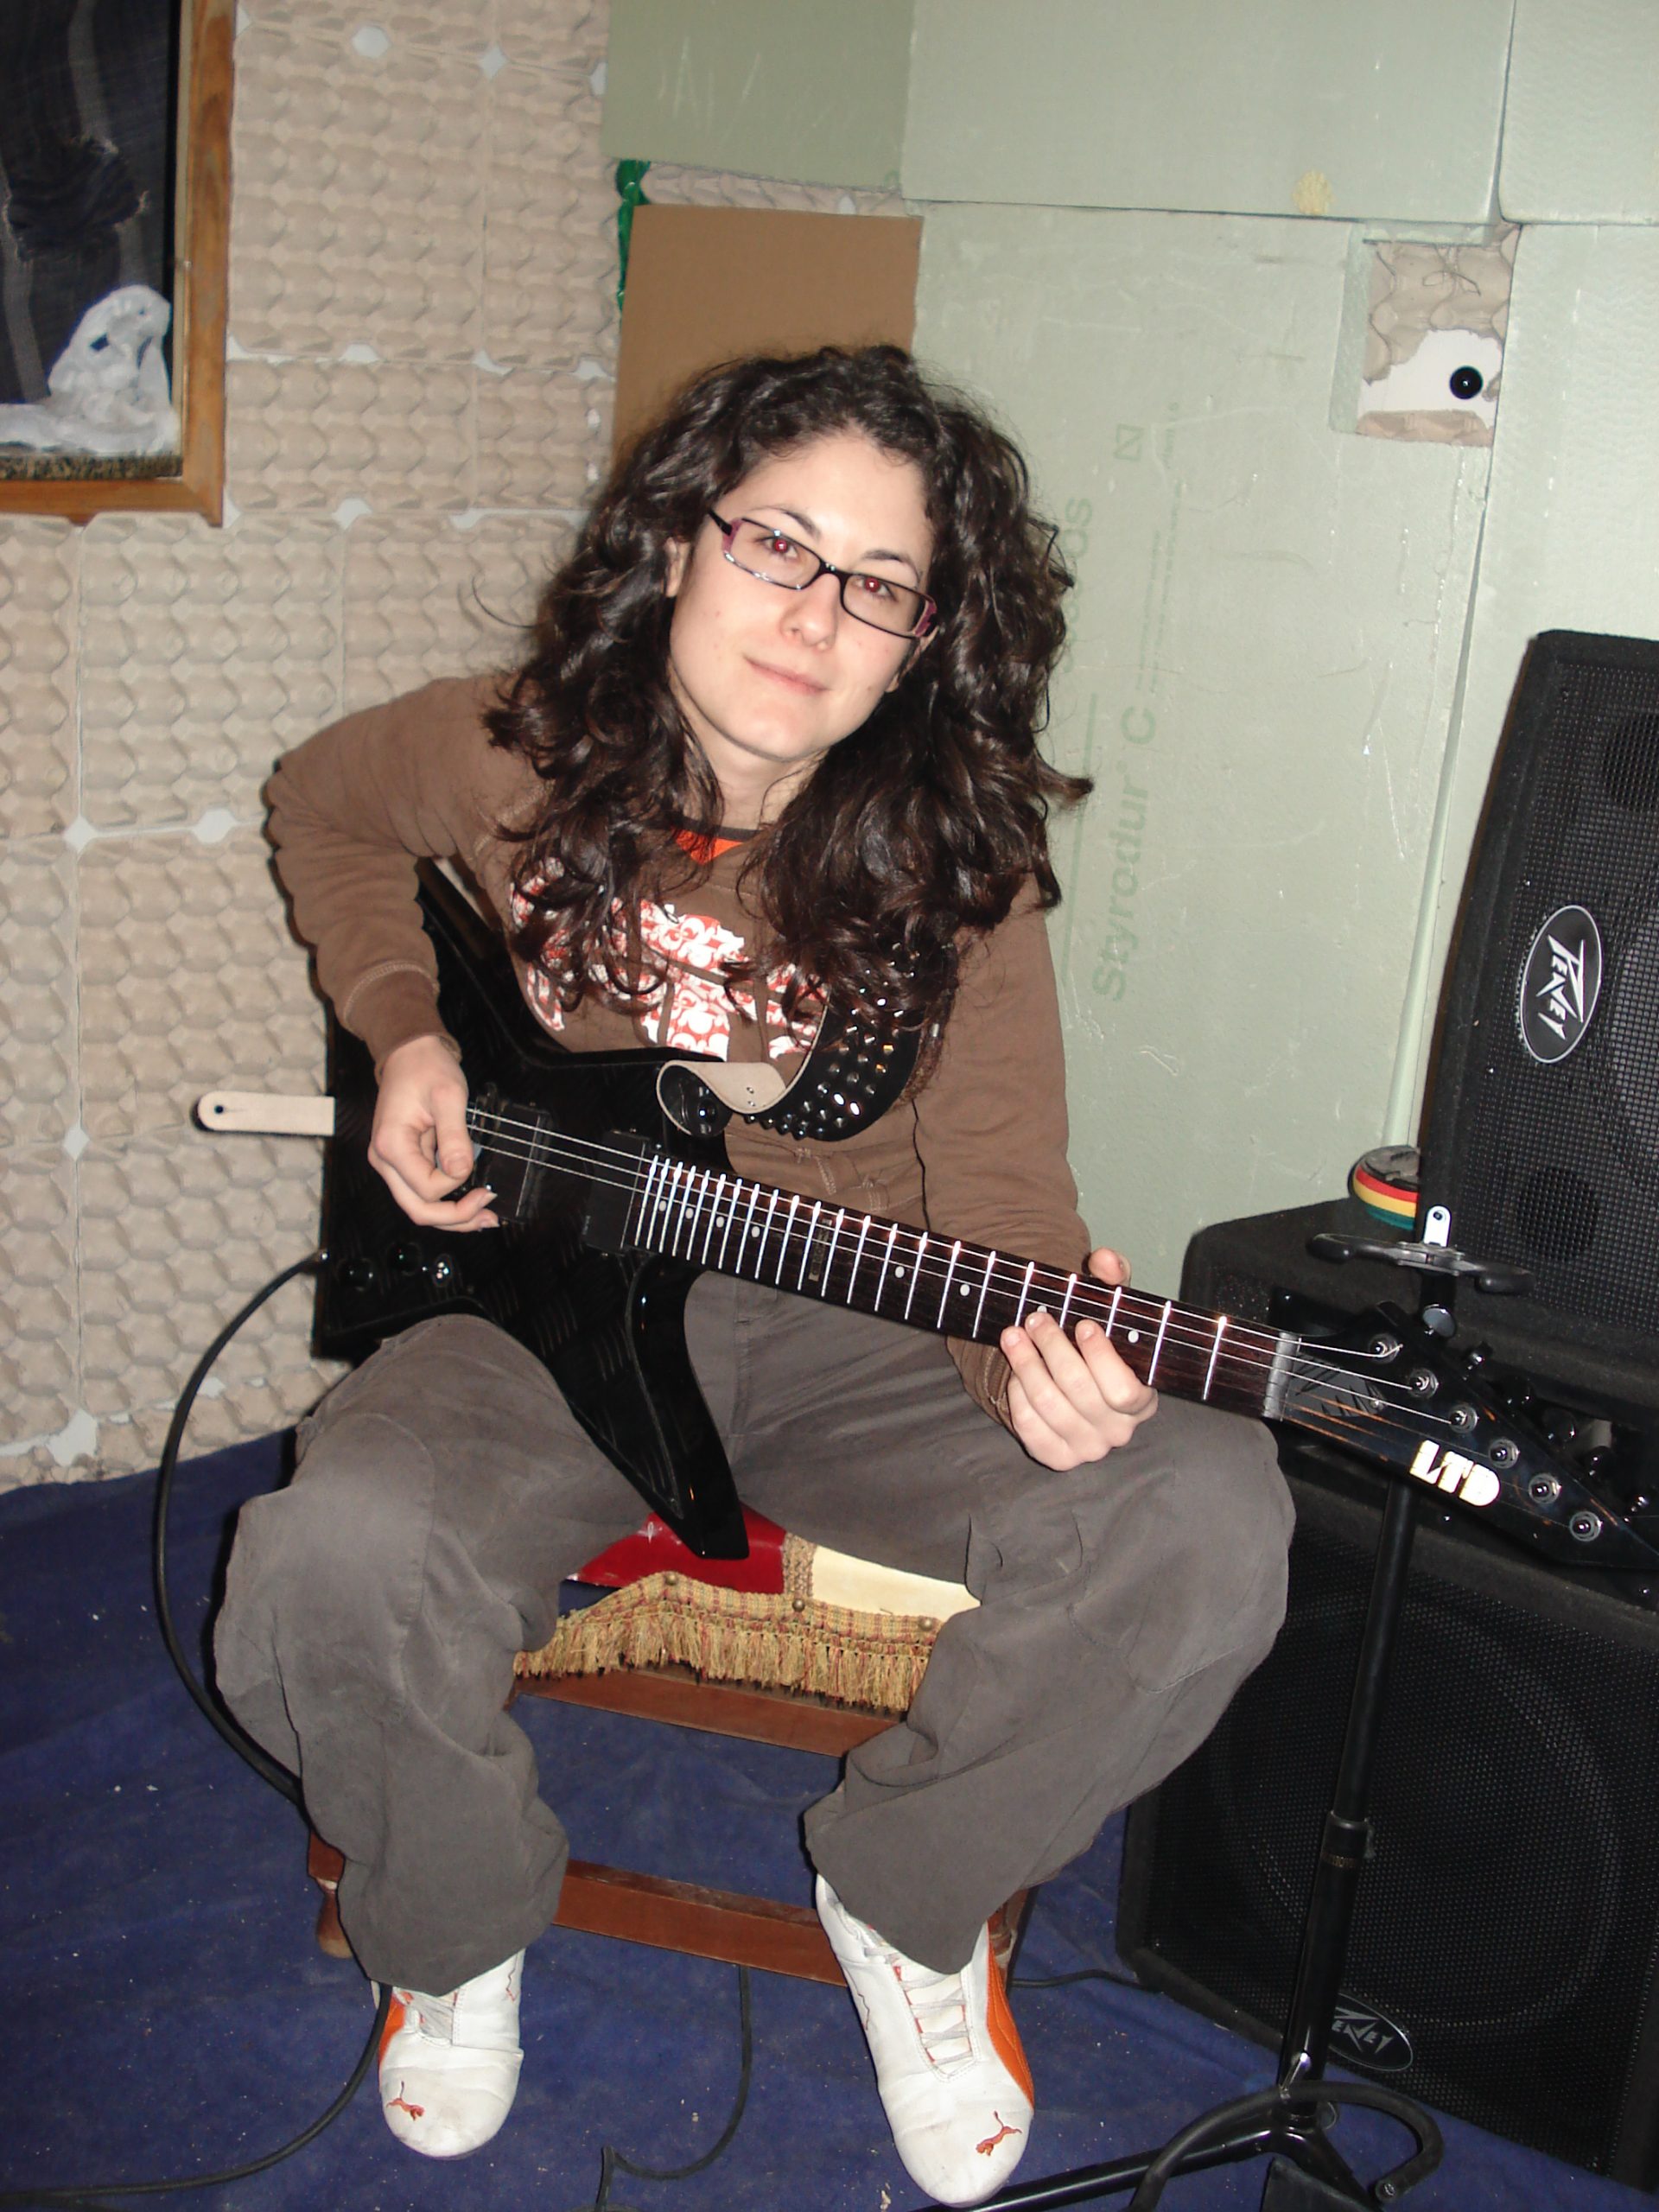 clases de guitarra online necesito clases de guitarra online busco profesor de guitarra online